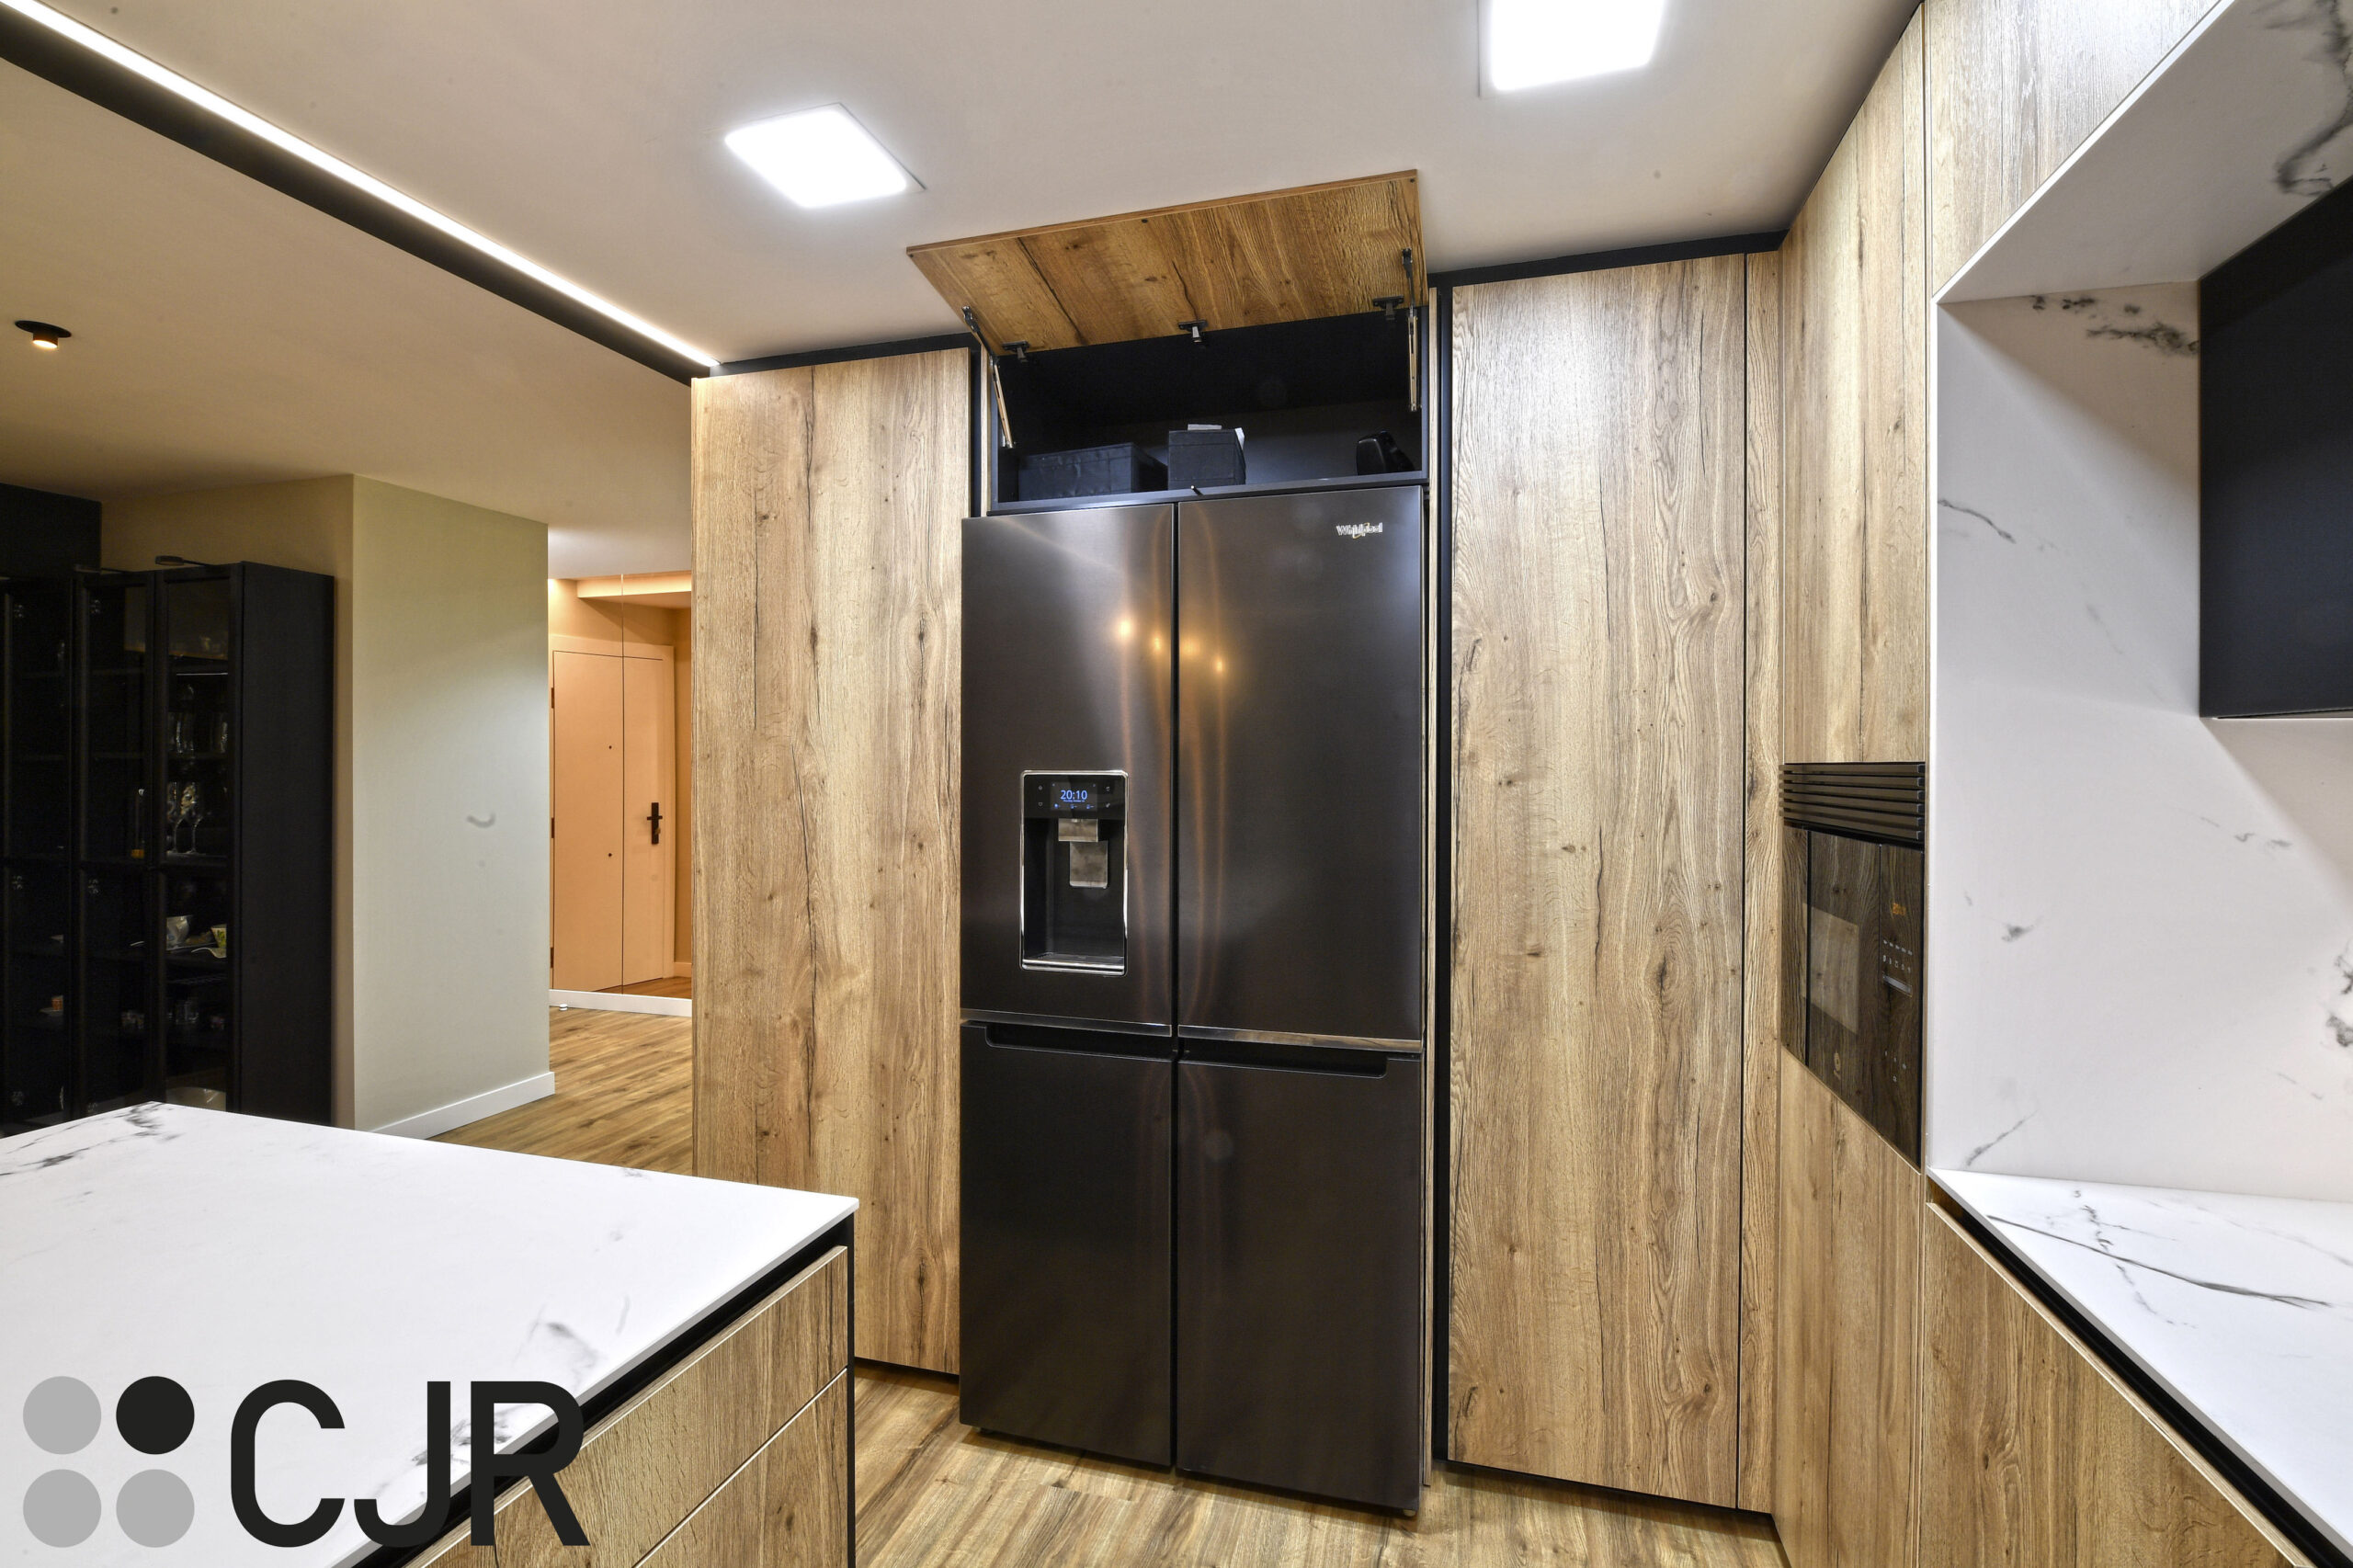 mueble alto de cocina abatible con interior en negro cjr